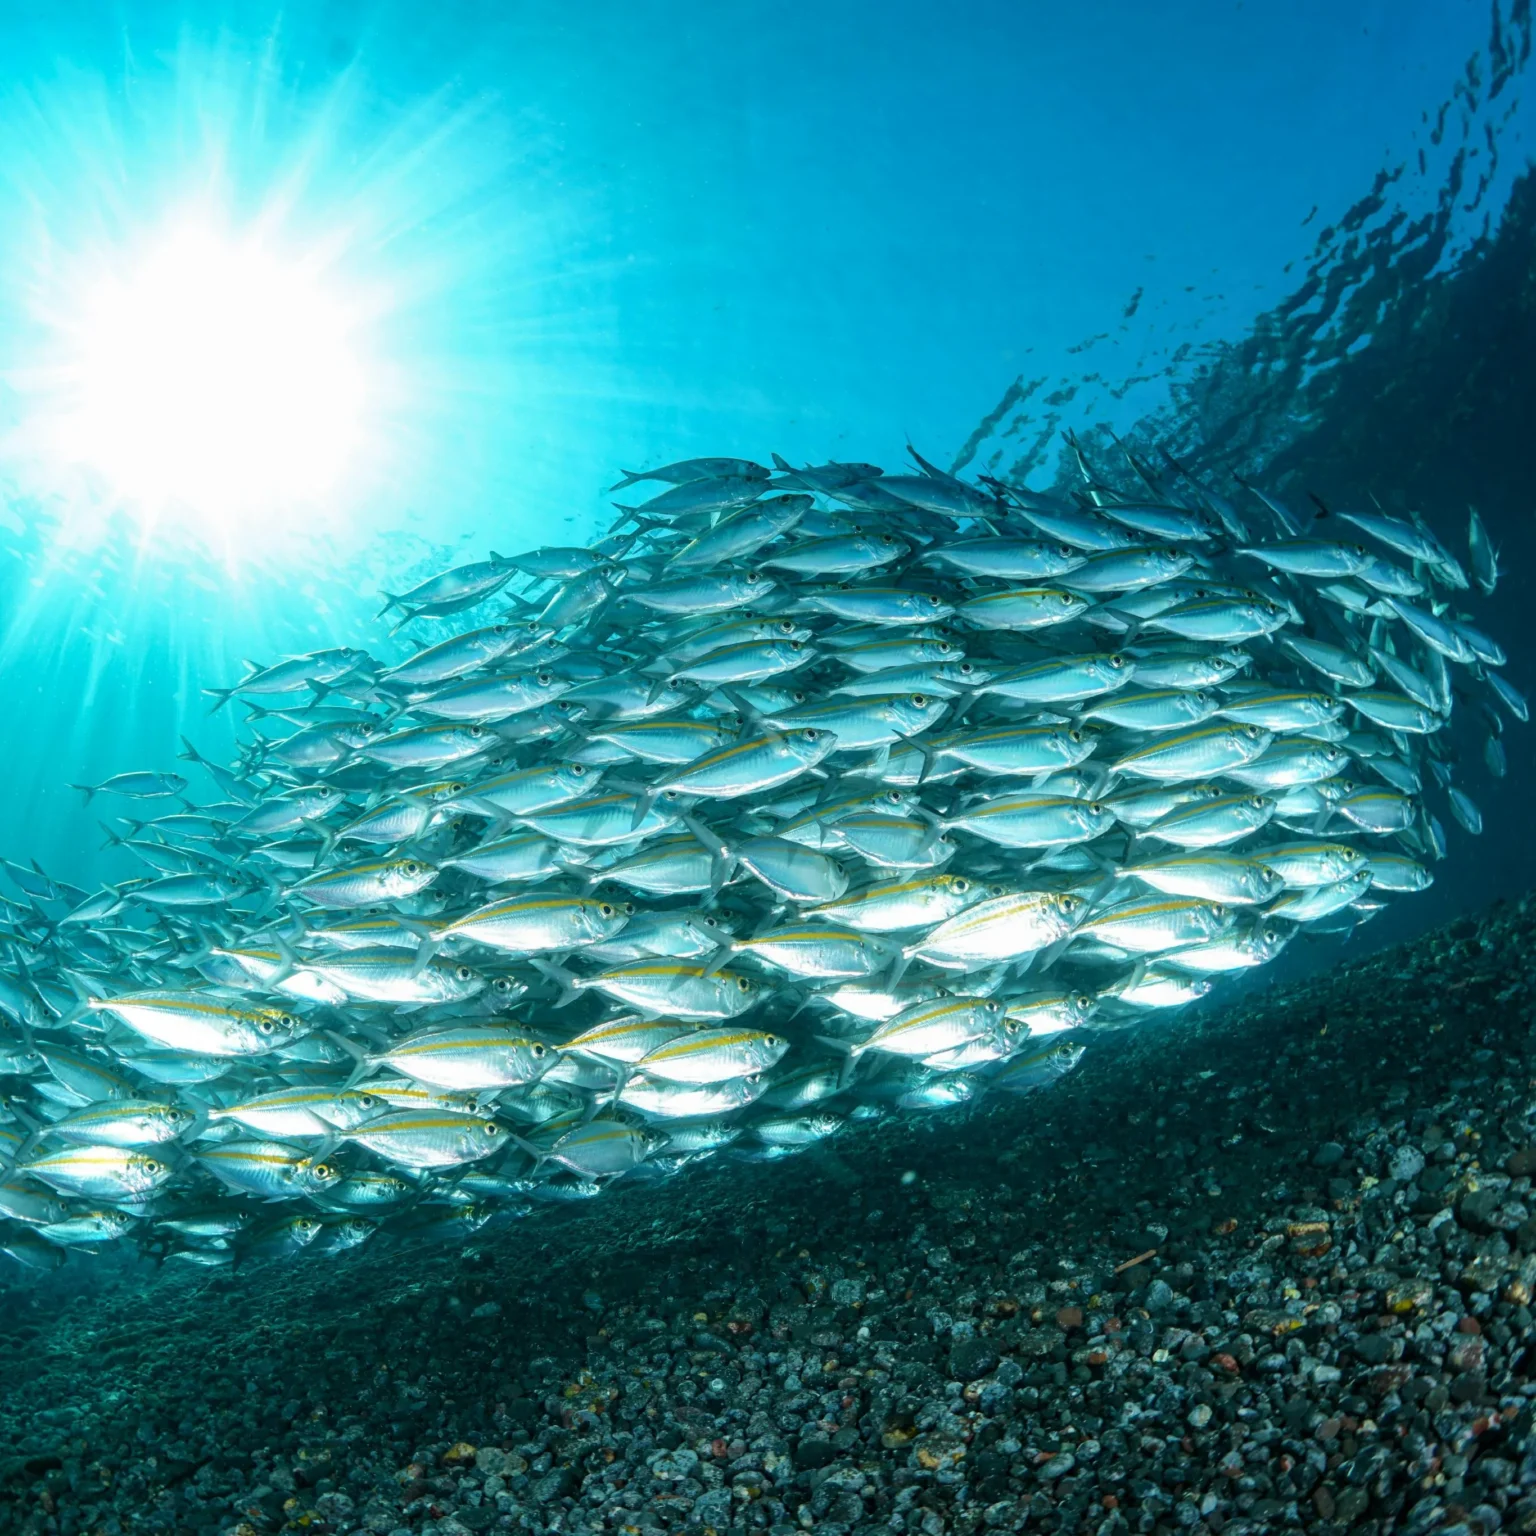 Fische schwimmen im Schwarm am Boden sieht man Kies und von links oben dringt die Sonne durchs Wasser